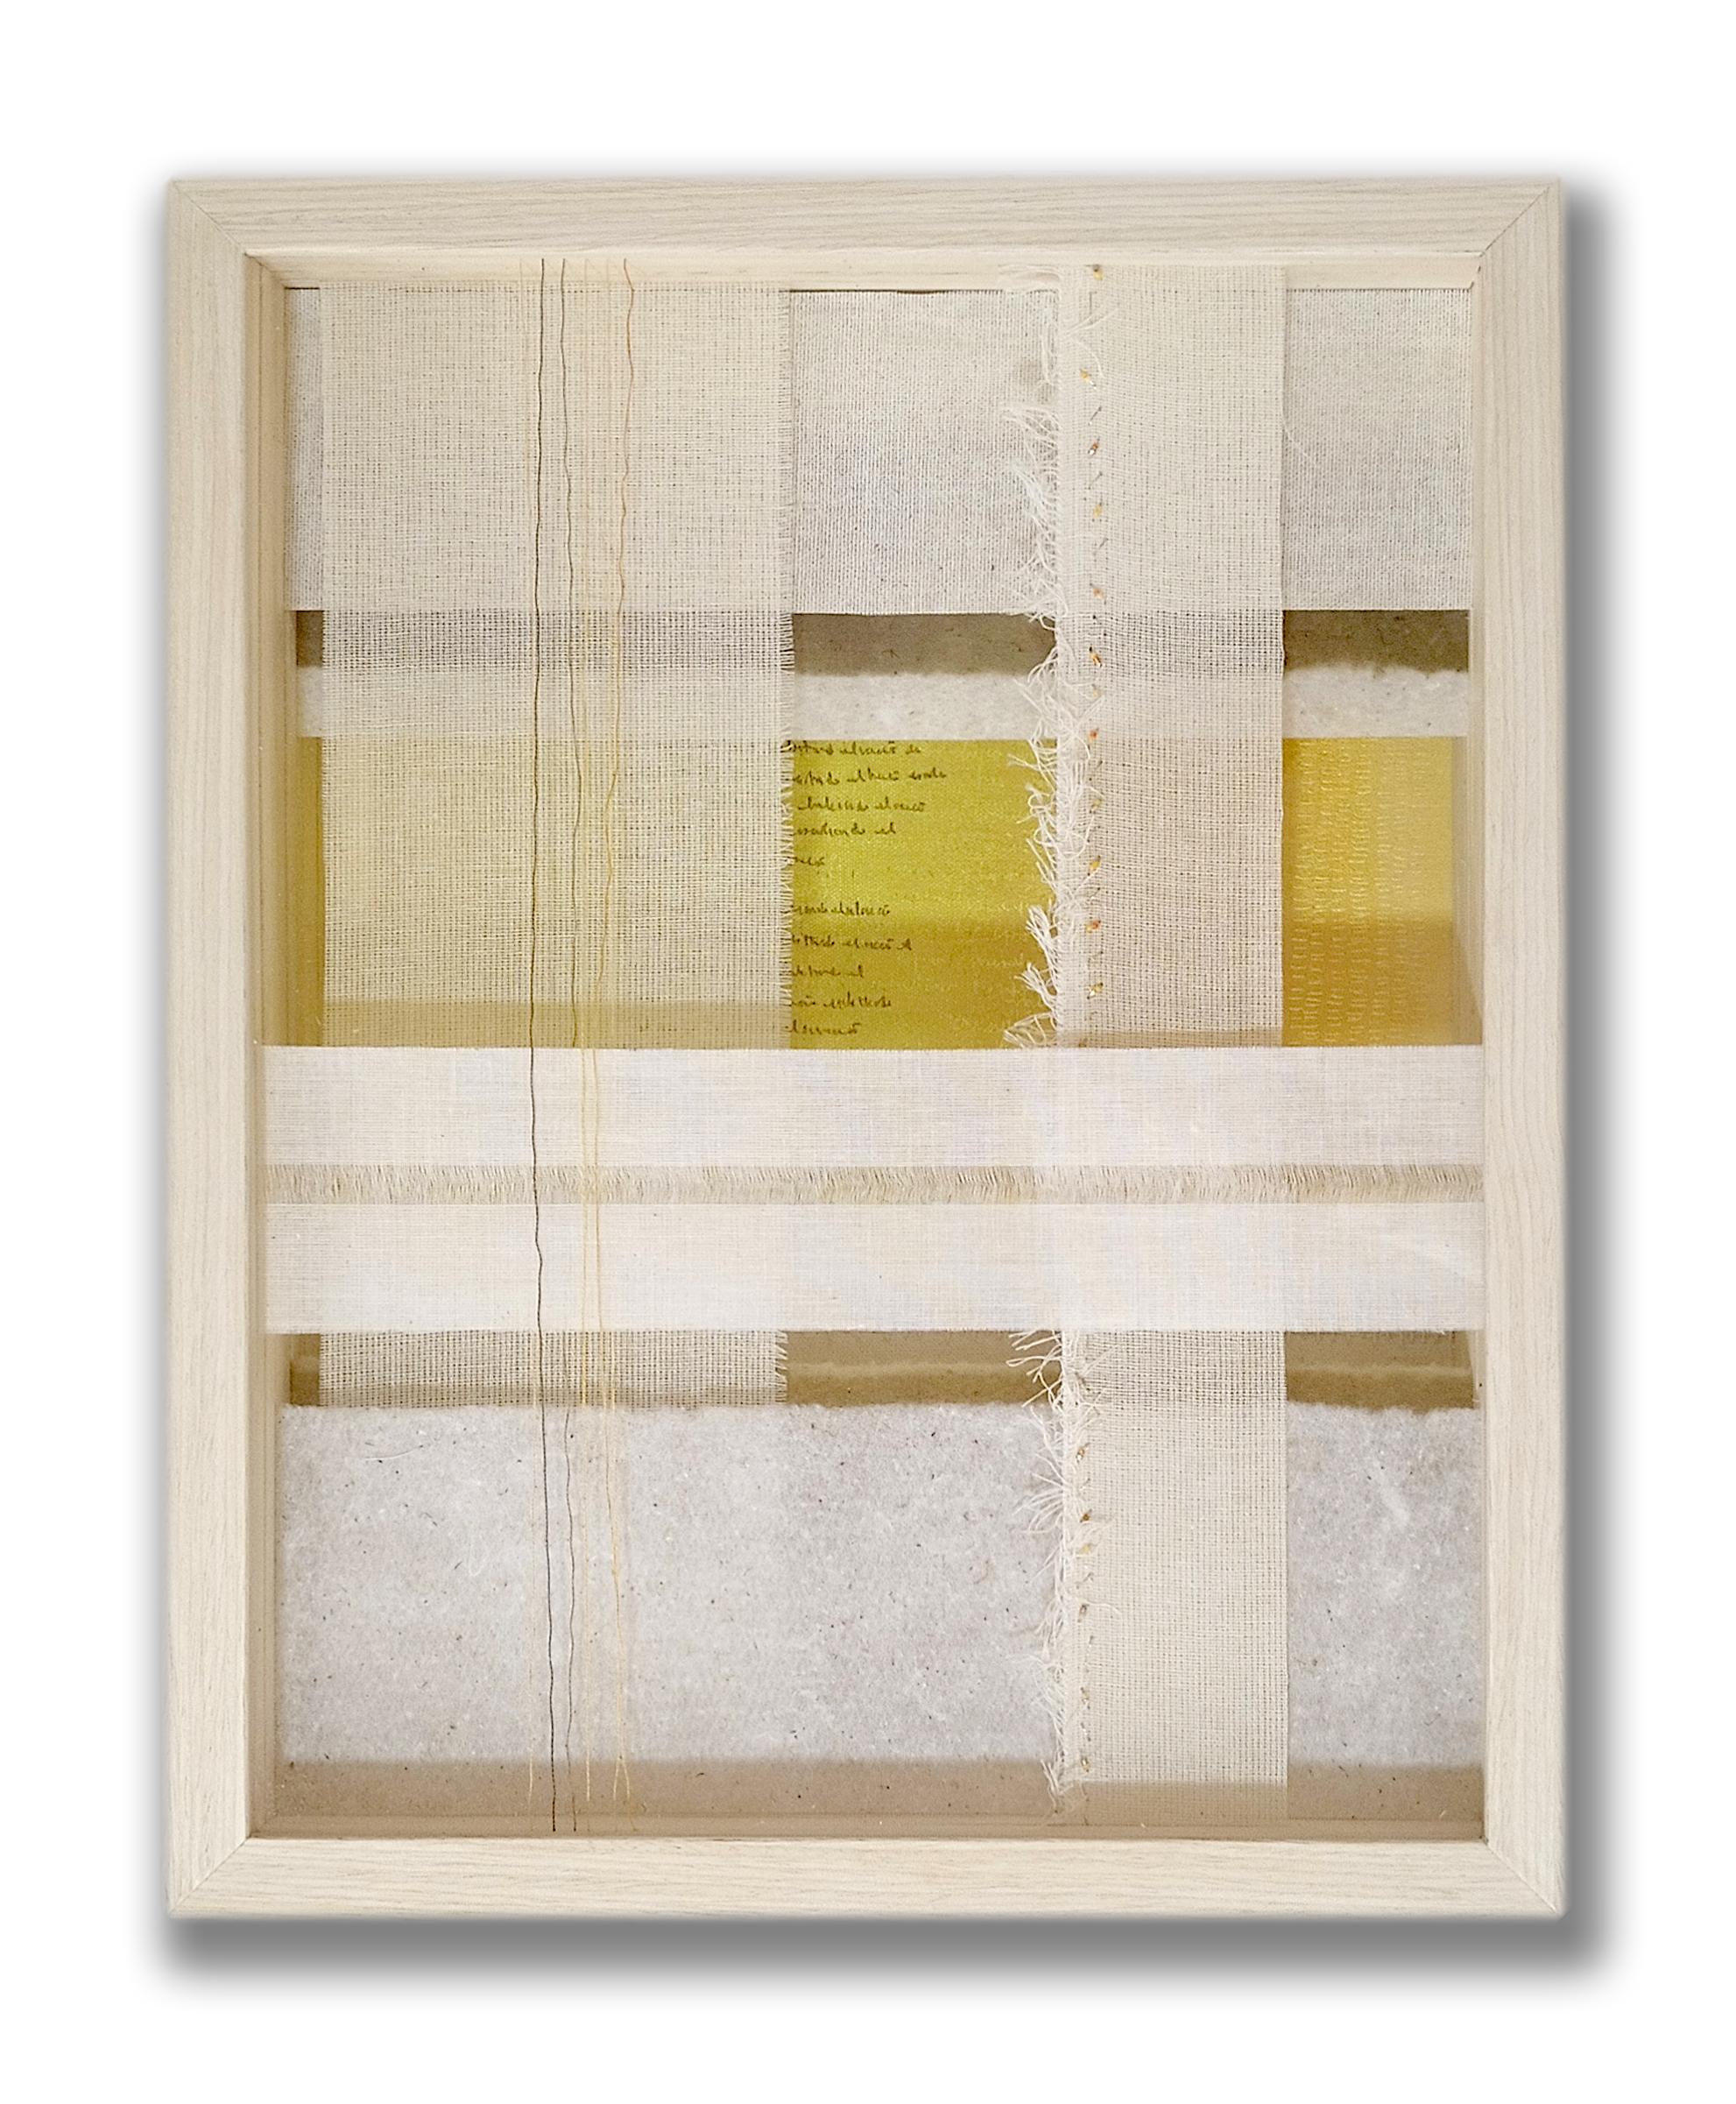 Intenciones del Silencio XVI, 2023 von Angélica Chavarro Franco
Aus der Reihe Intenciones del Silencio
Gemischte Medien (Ölfarbe und Textil) auf Leinwand 
Größe des Rahmens:  17.9 H in x 13.9 W in x 4.5 in D
Einzigartig
Signiert auf der Rückseite